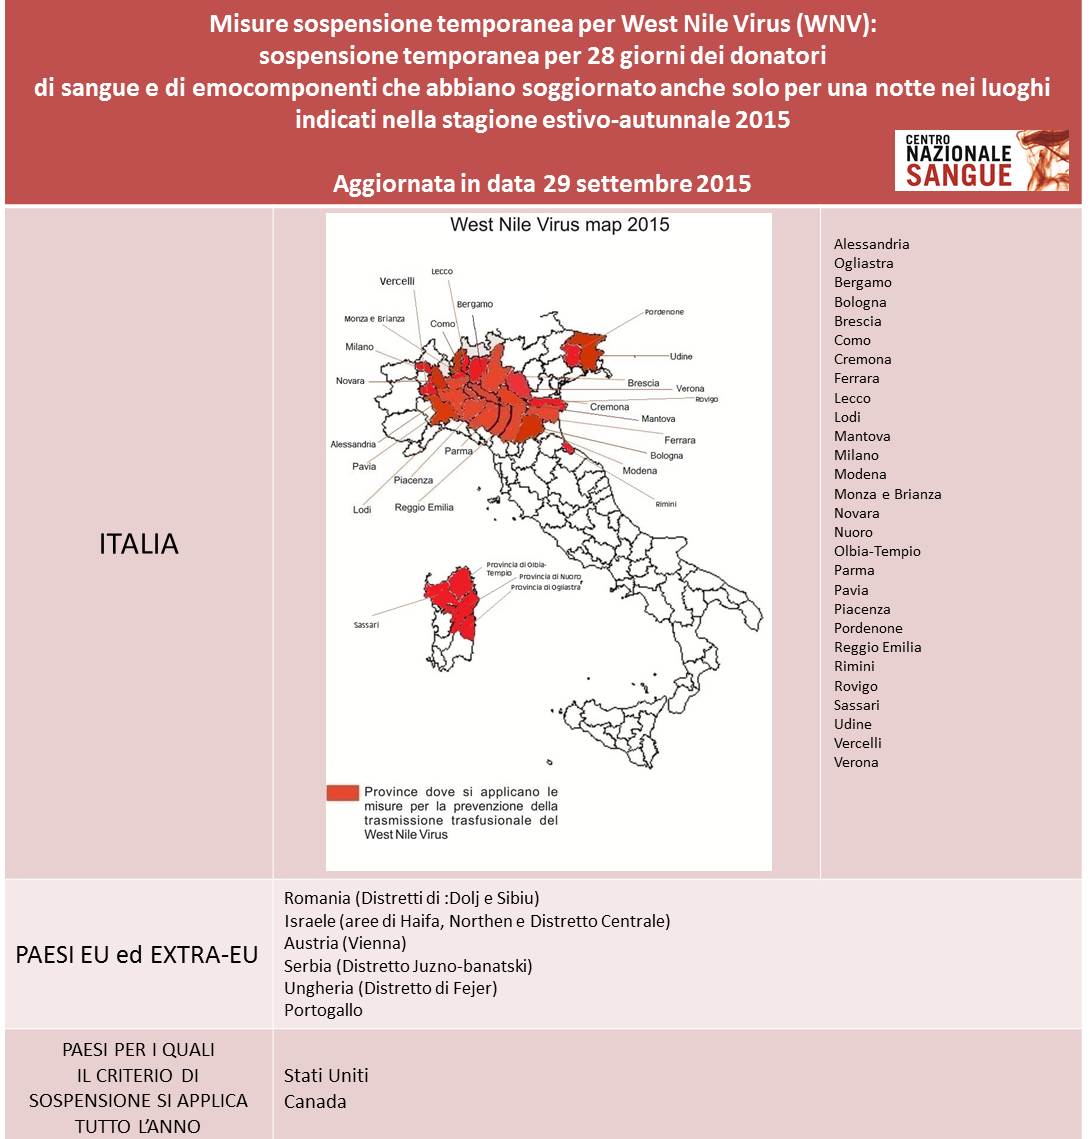 Centro Nazionale Sangue - West Nilus Virus 2015